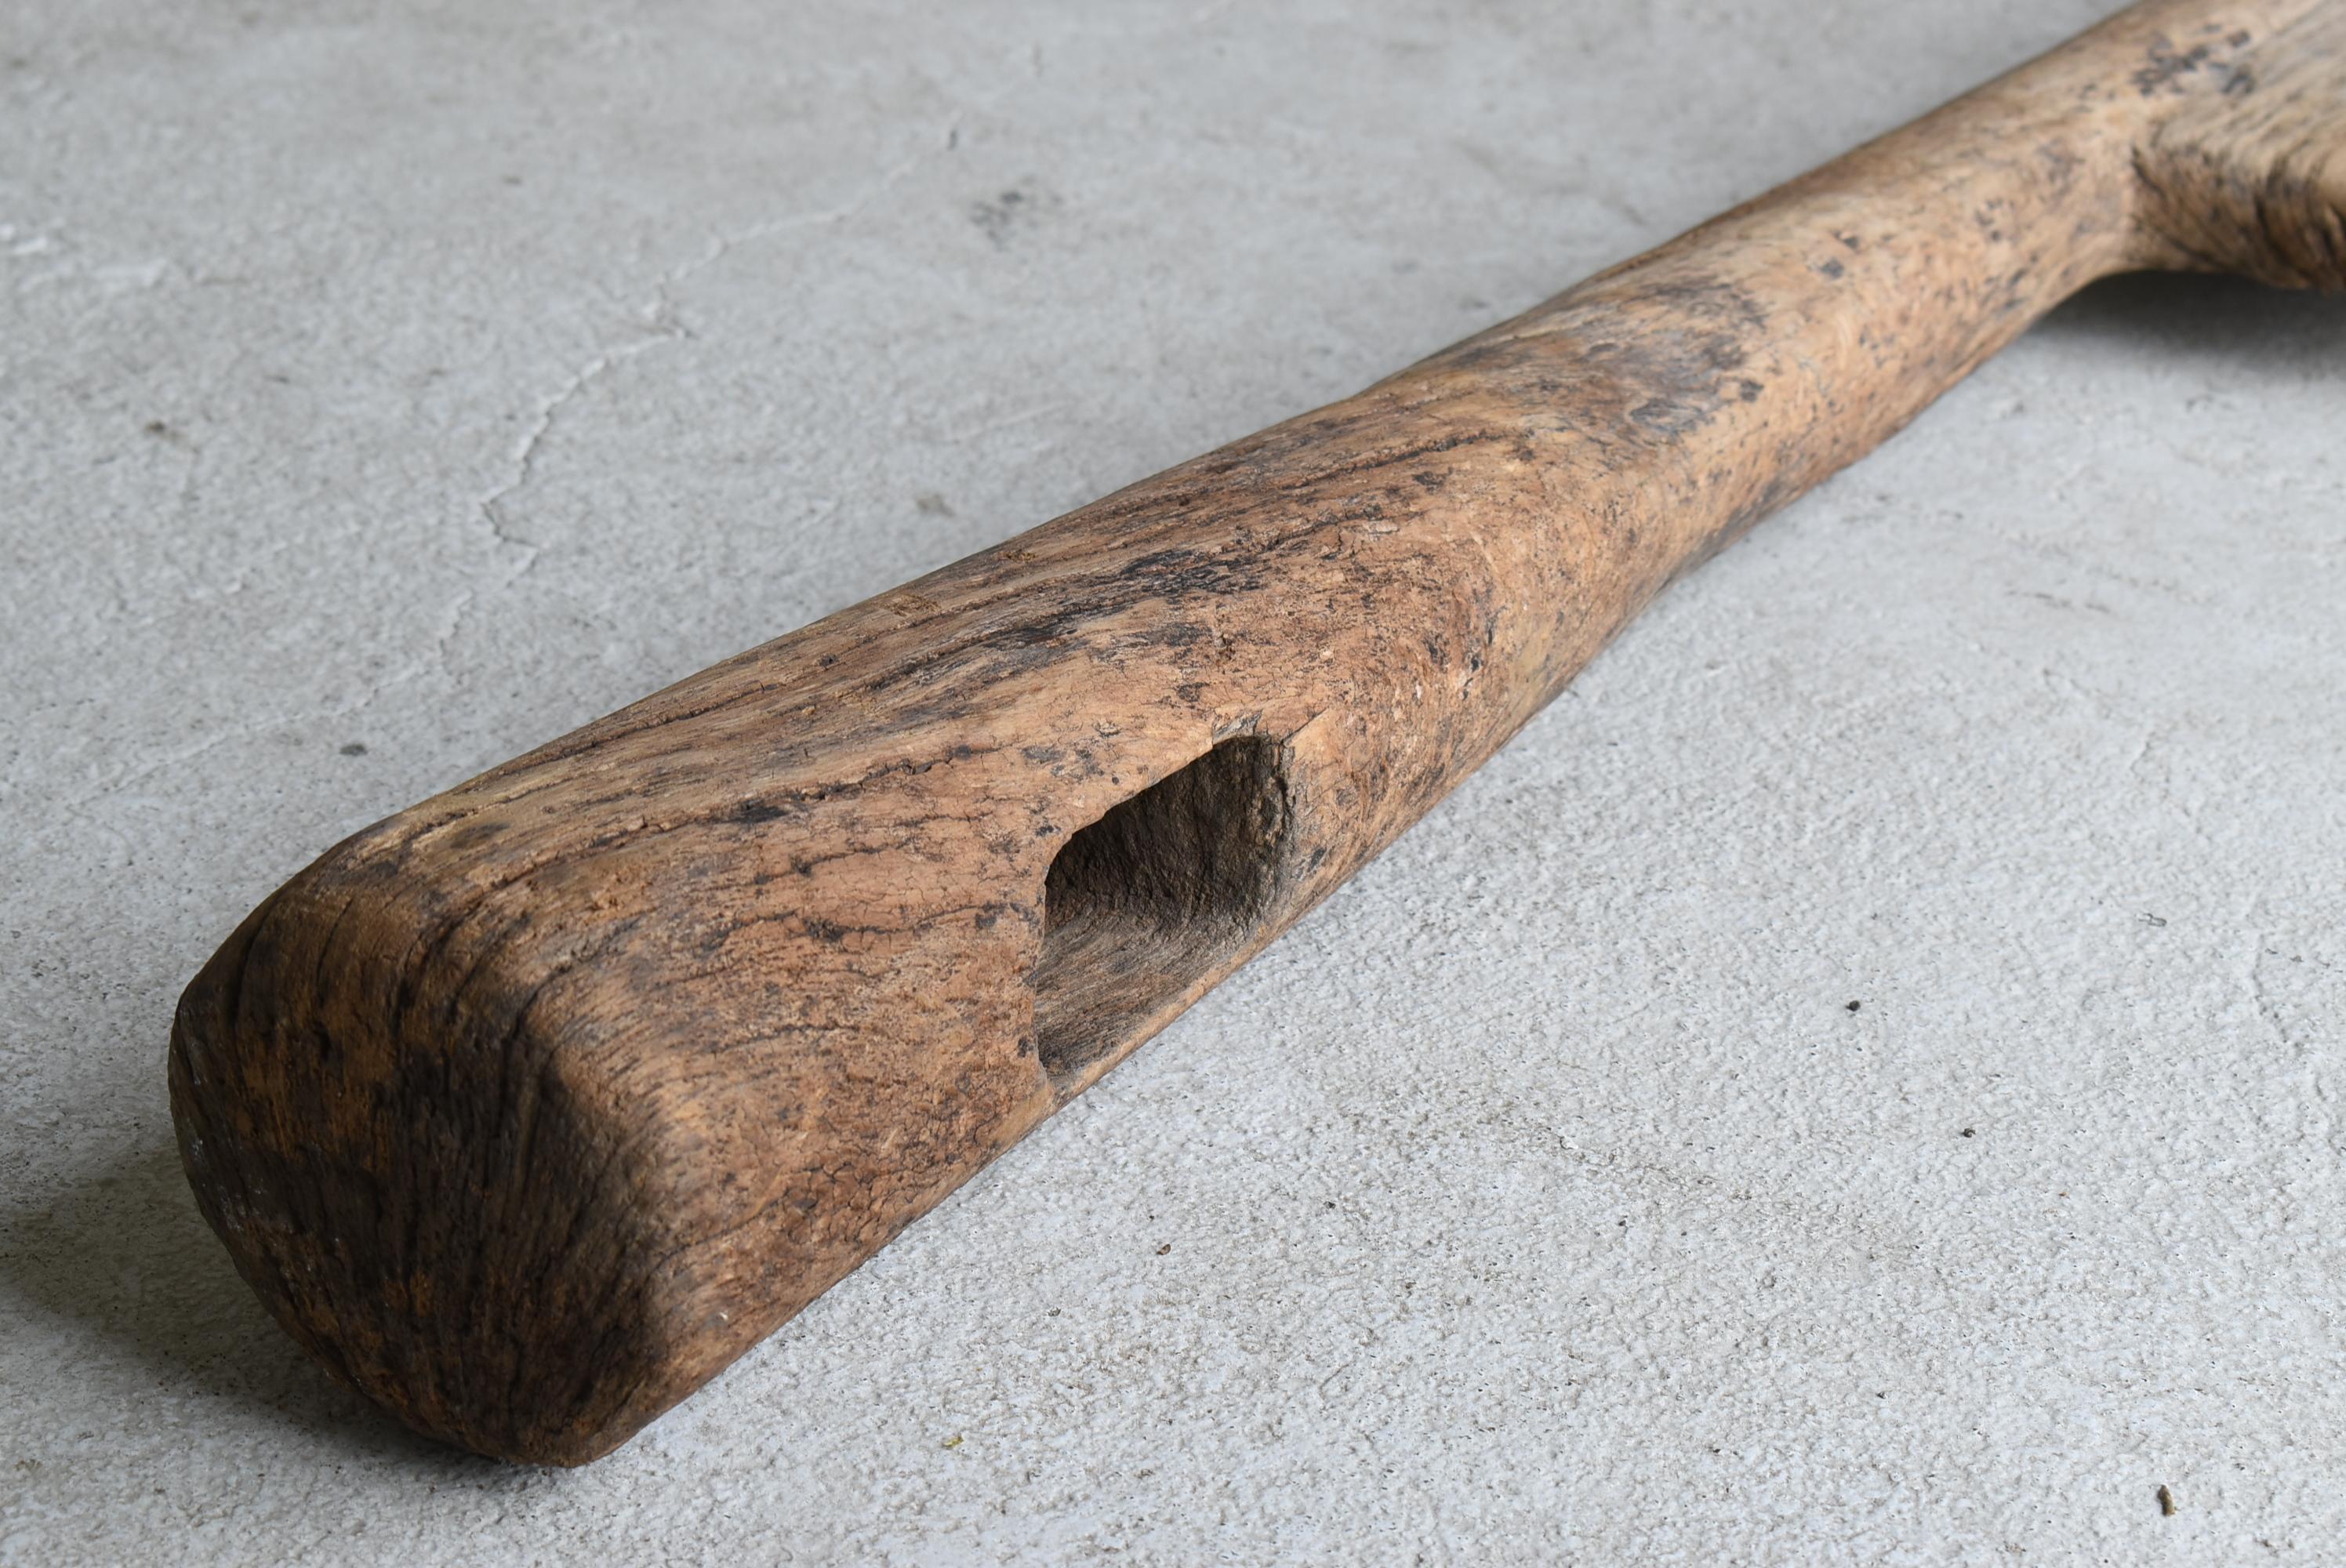 Oak Japanese Antique Wooden Oar 1800s-1860s / Folk Tools Wabisabi Mingei Object